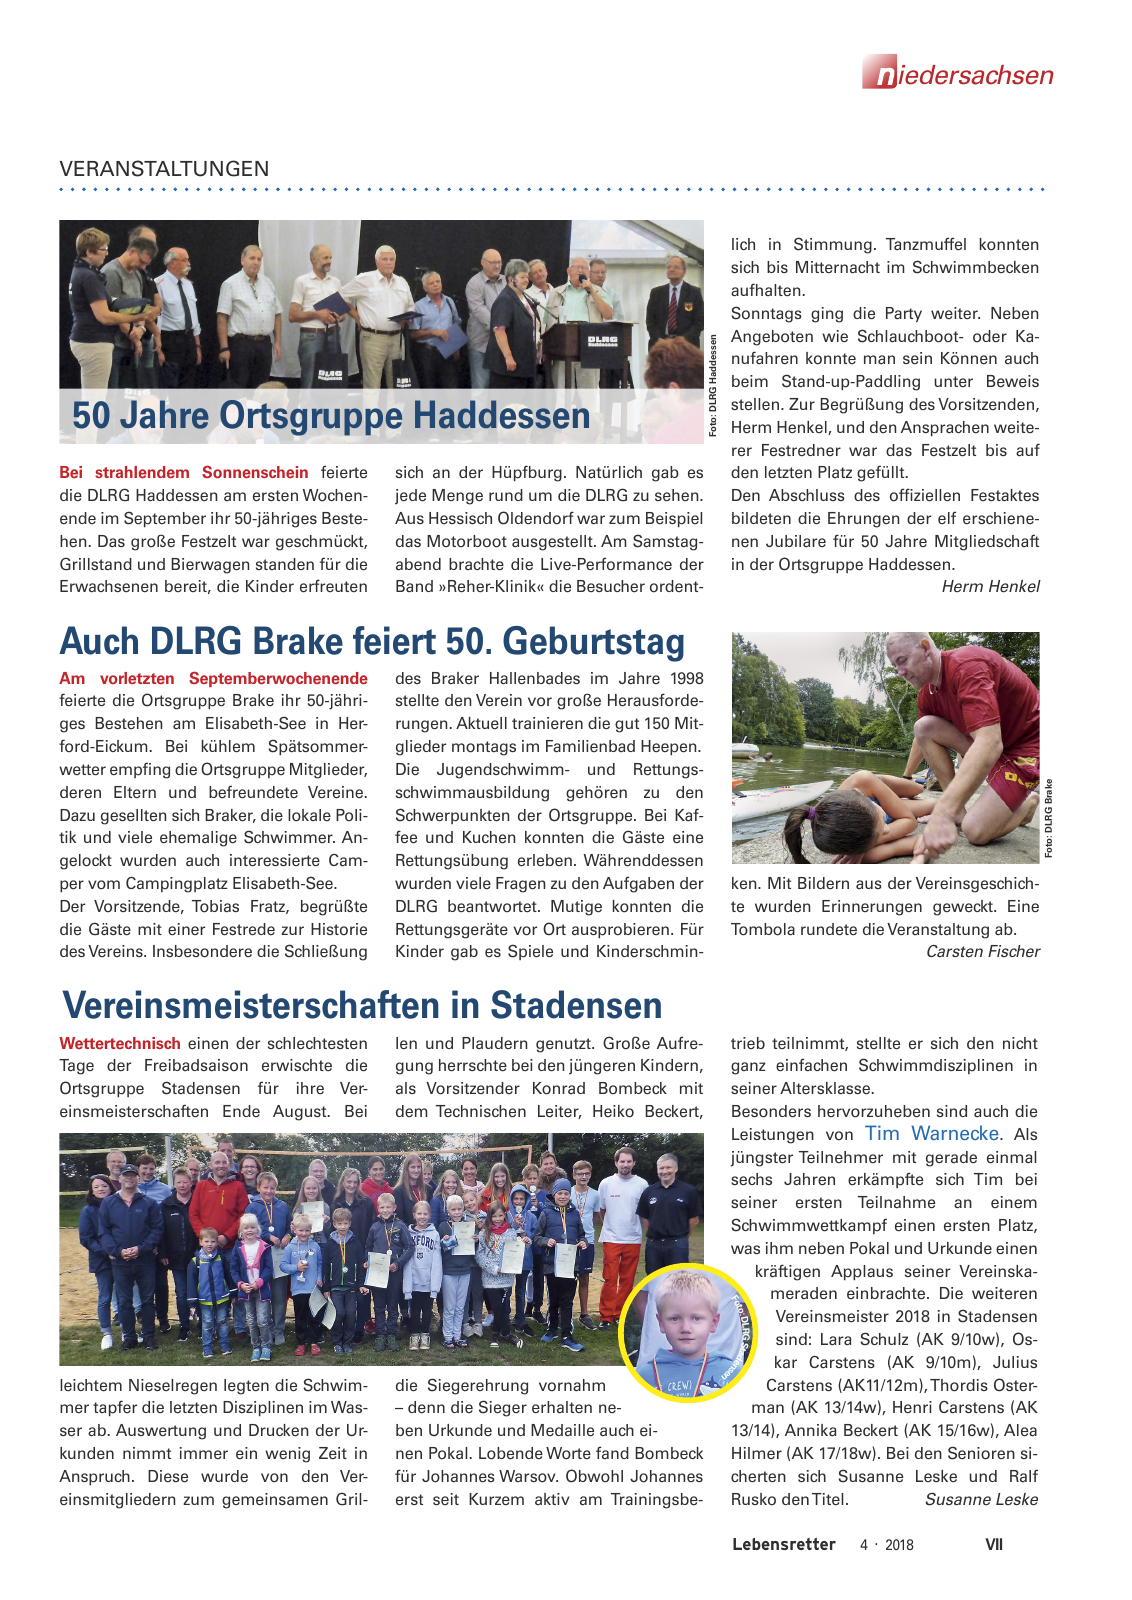 Vorschau Lebensretter 4/2018 - Regionalausgabe Niedersachsen Seite 9